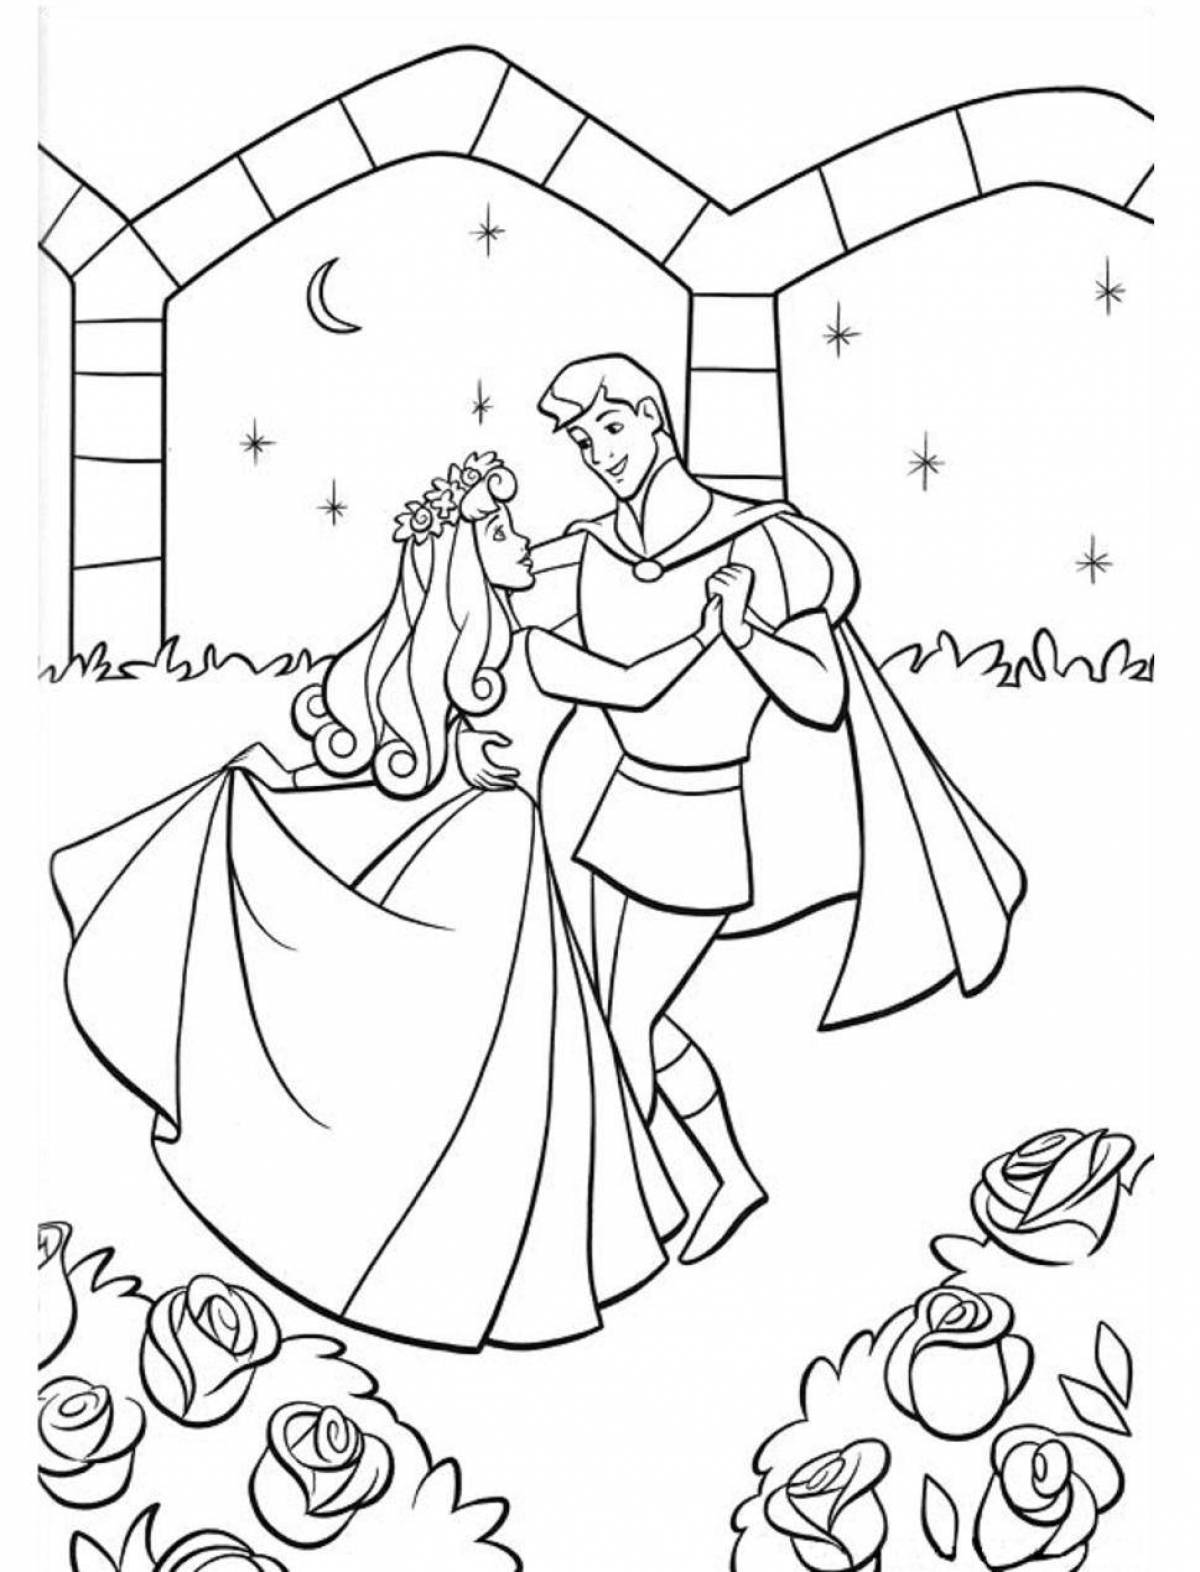 Раскраска принцесса и принц для детей